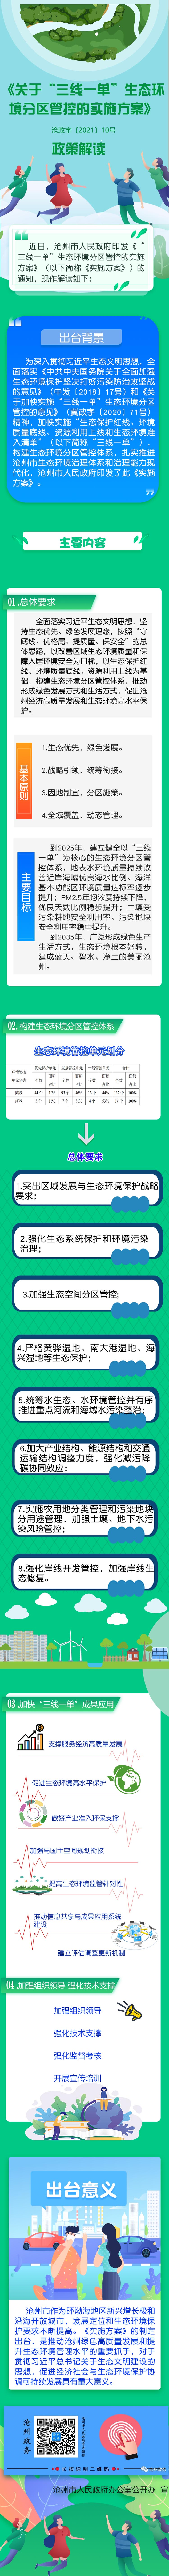 图说《河北省沧州市 “三线一单”生态环境分区管控方案》.jpg